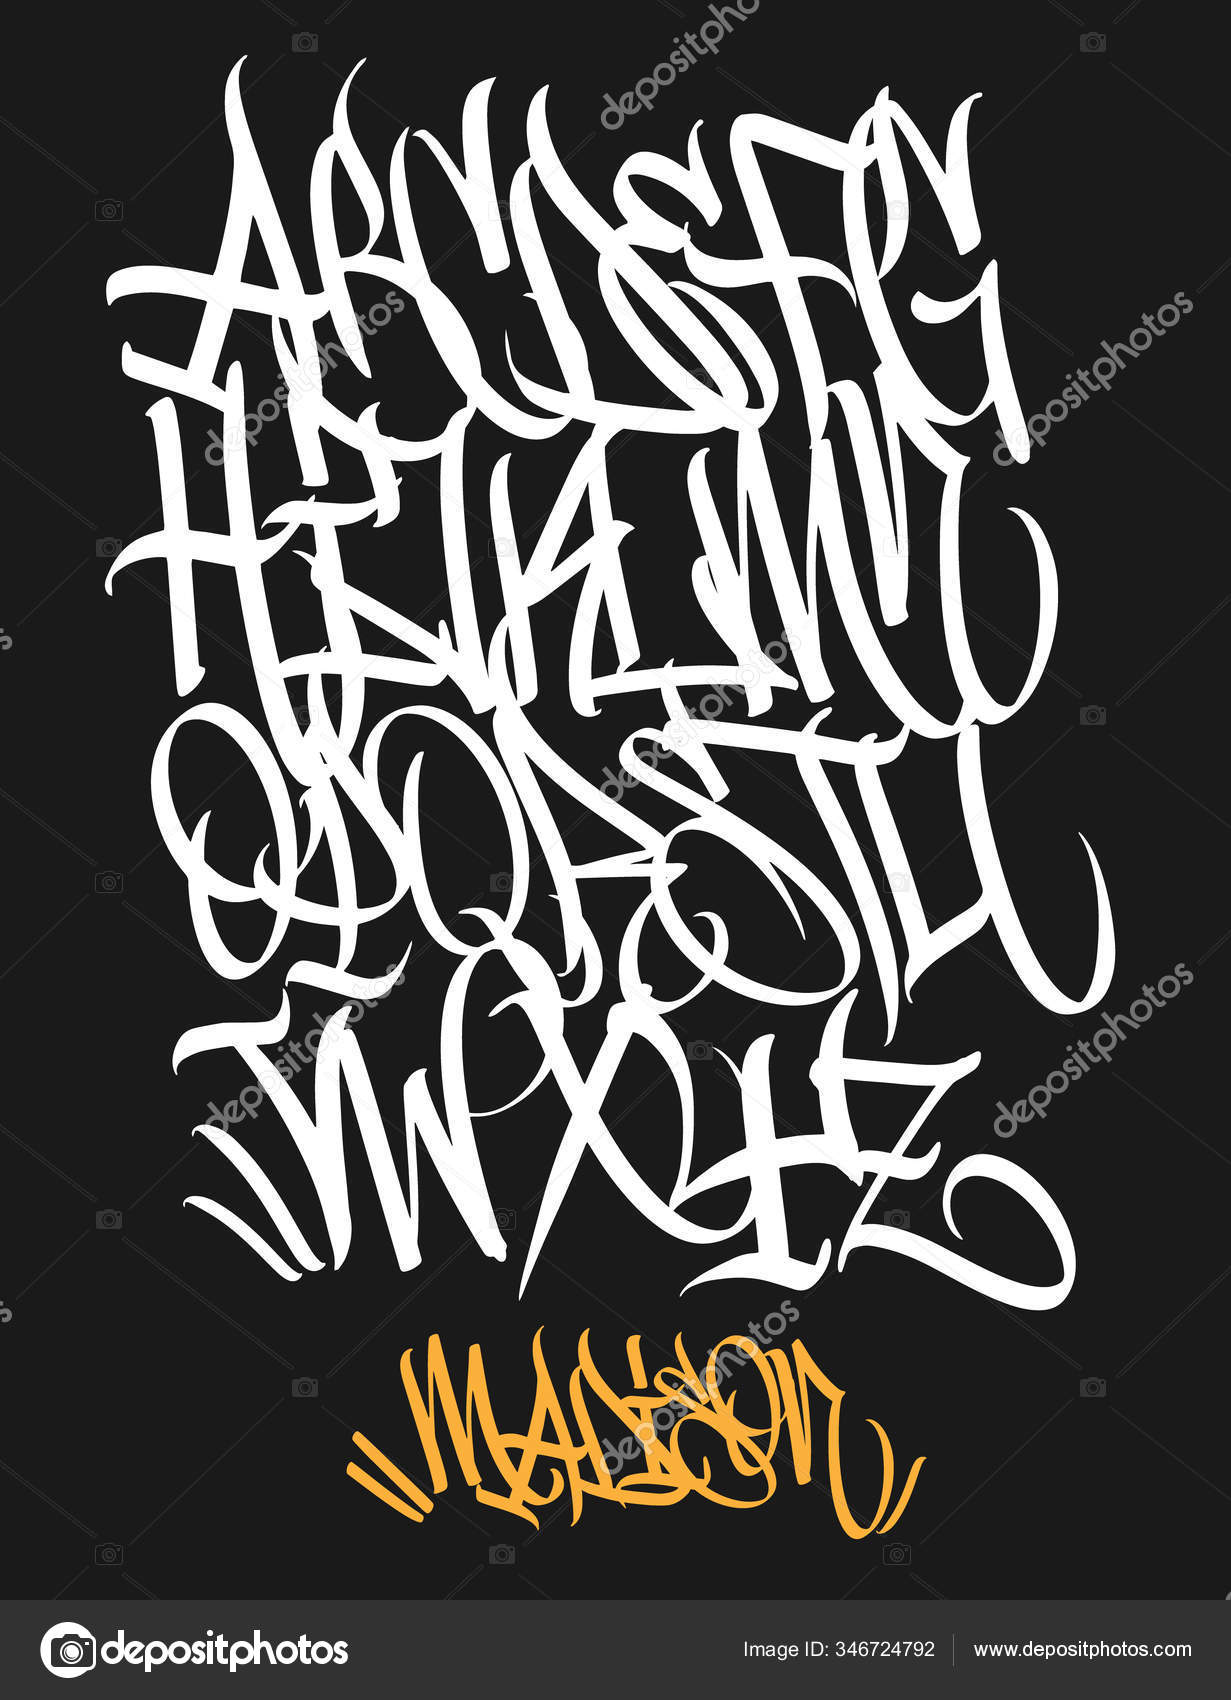 Marker Graffiti Font tipografia scritta a mano illustrazione vettoriale -  Vettoriale Stock di ©rosdesign 346724792